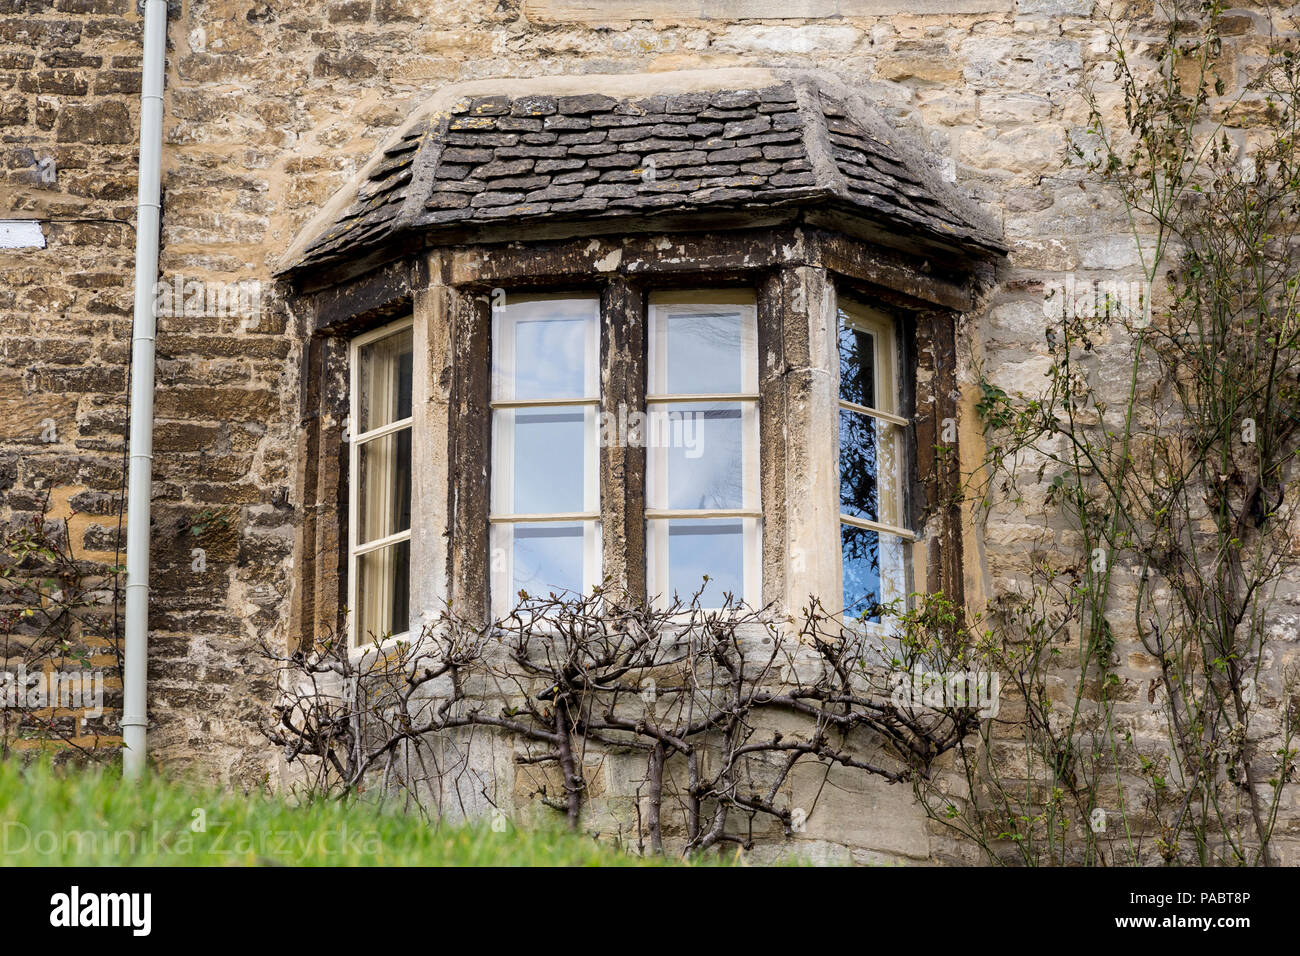 Architecture de Burford, un beau village médiéval dans l'Oxfordshire, Angleterre. Banque D'Images